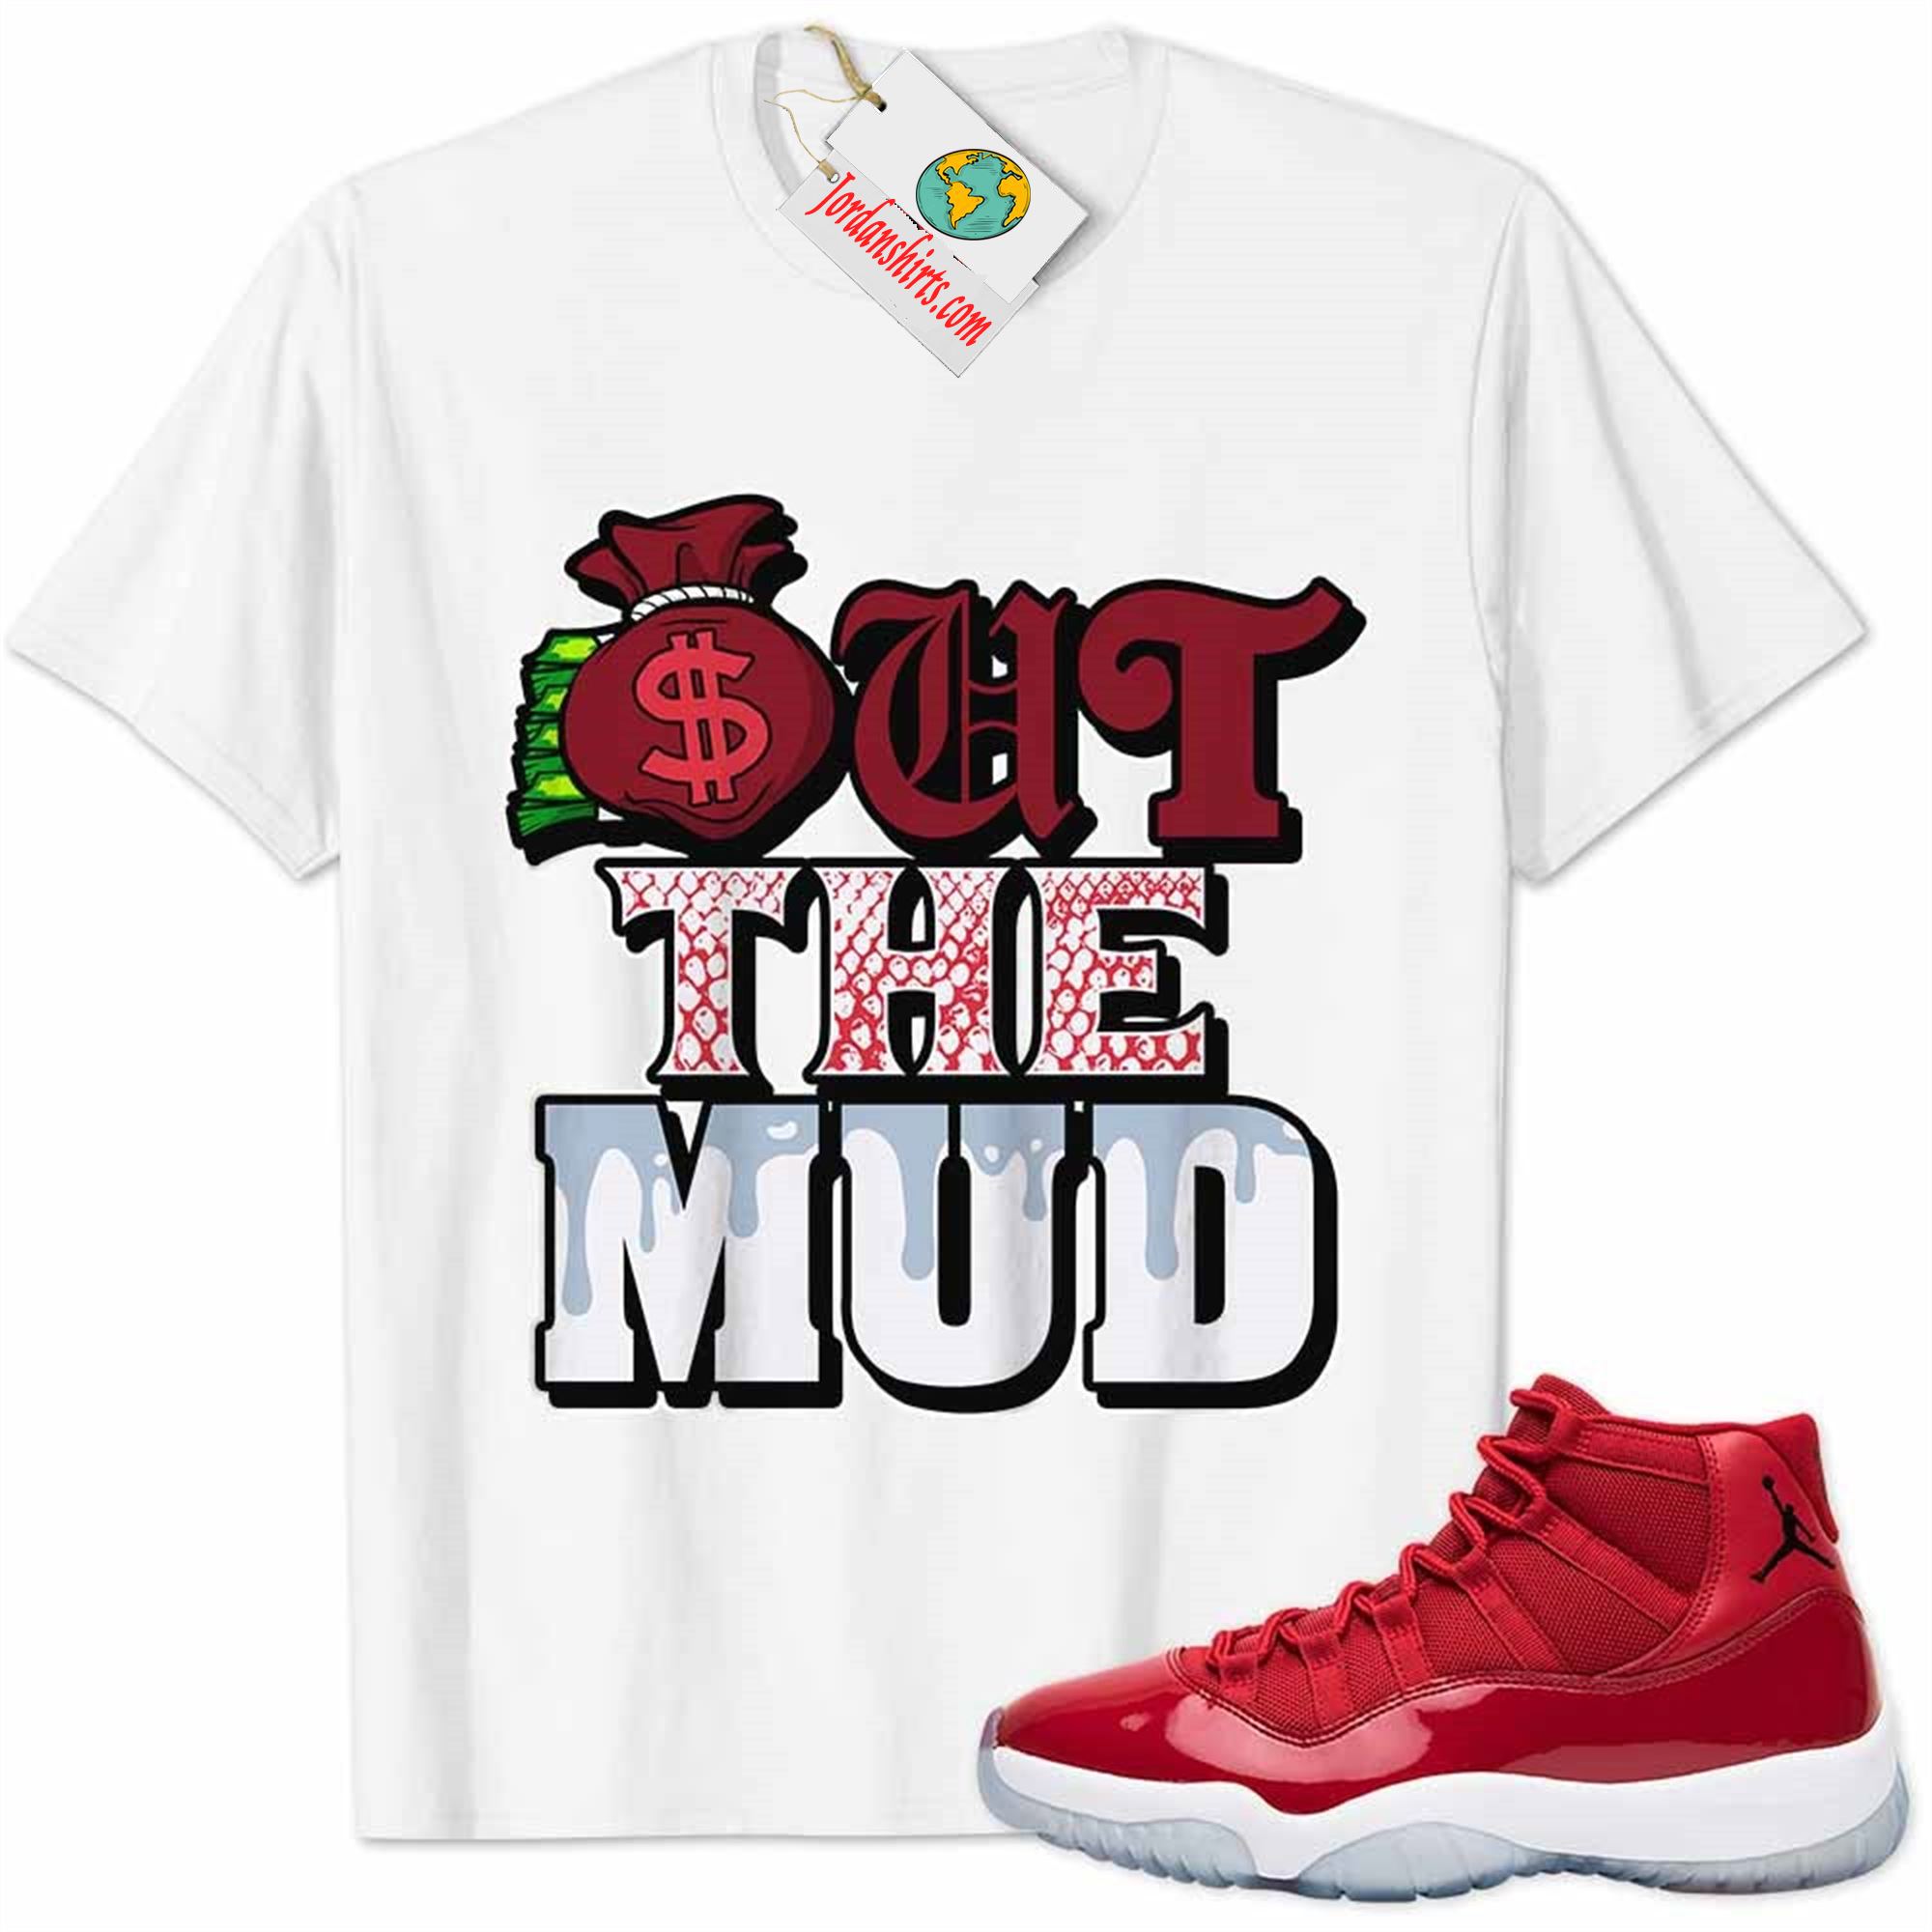 Jordan 11 Shirt, Jordan 11 Gym Red Shirt Out The Mud Money Bag White Full Size Up To 5xl